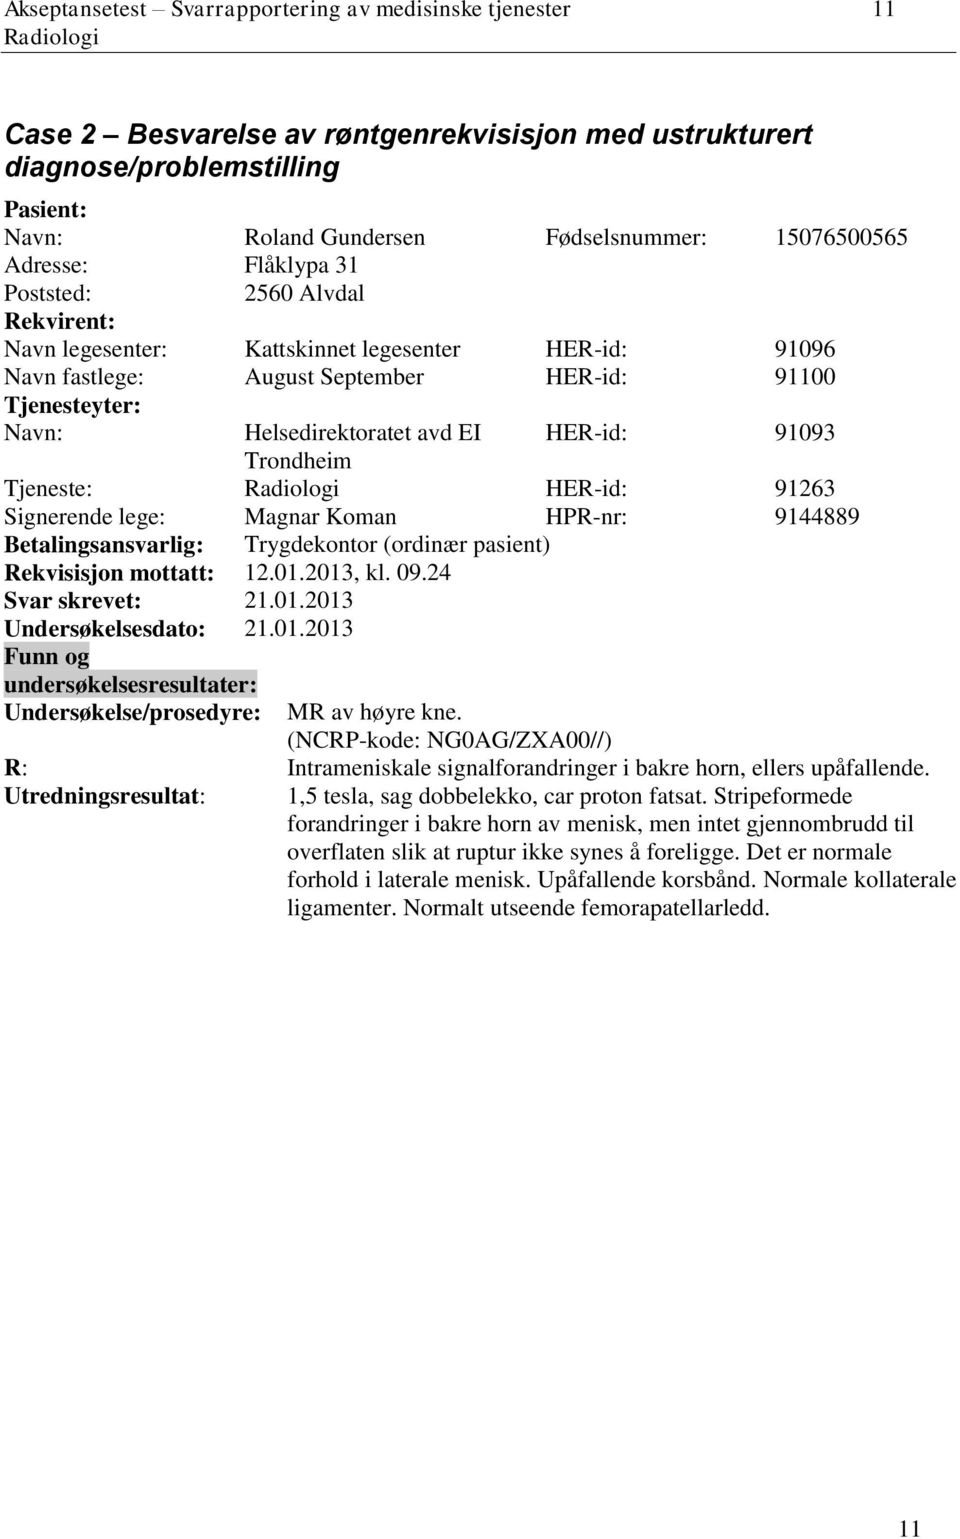 HER-id: 91093 Trondheim Tjeneste: HER-id: 91263 Signerende lege: Magnar Koman HPR-nr: 9144889 Betalingsansvarlig: Trygdekontor (ordinær pasient) Rekvisisjon mottatt: 12.01.2013, kl. 09.